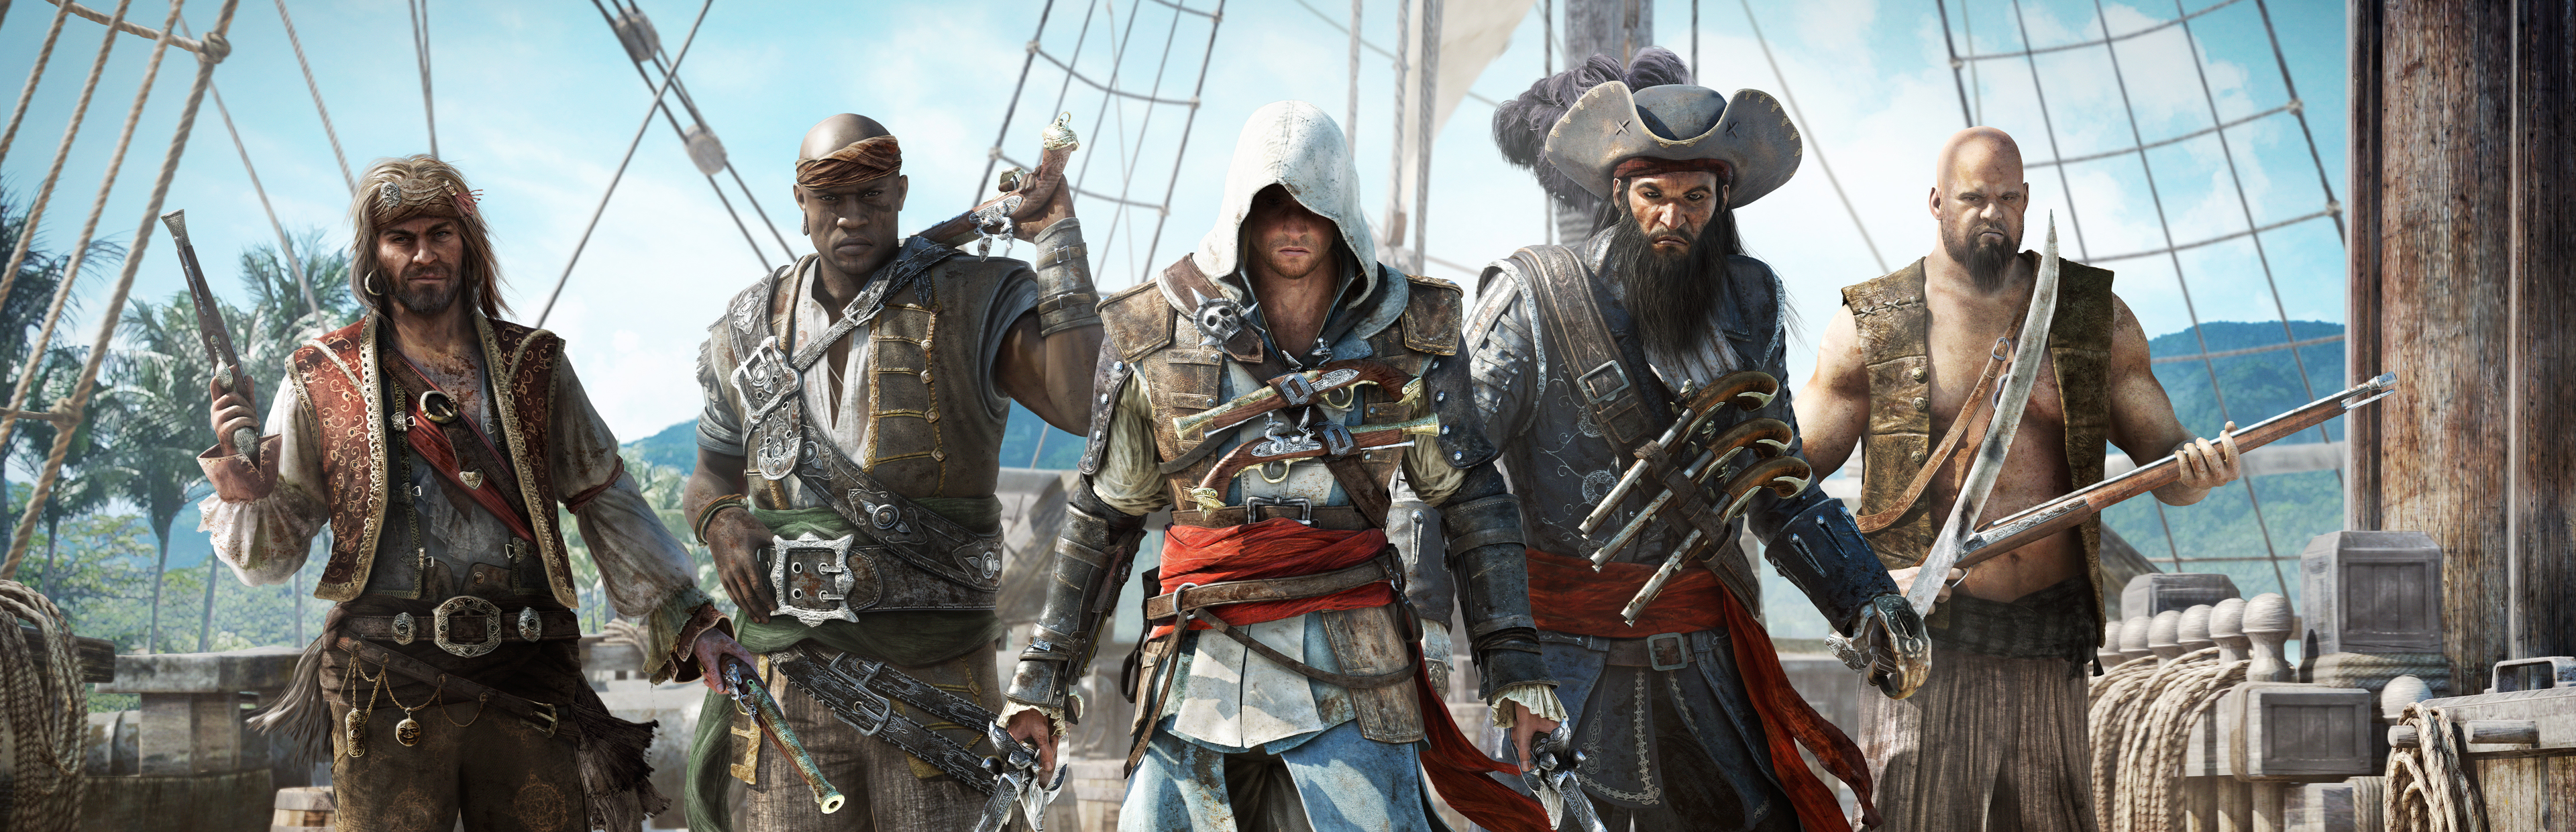 Игра пираты 4. Джек Рэкхем ассасин Крид 4. Assassin's Creed Блэк флаг. Ac4 Black Flag. Ассасин Крид пиратс.